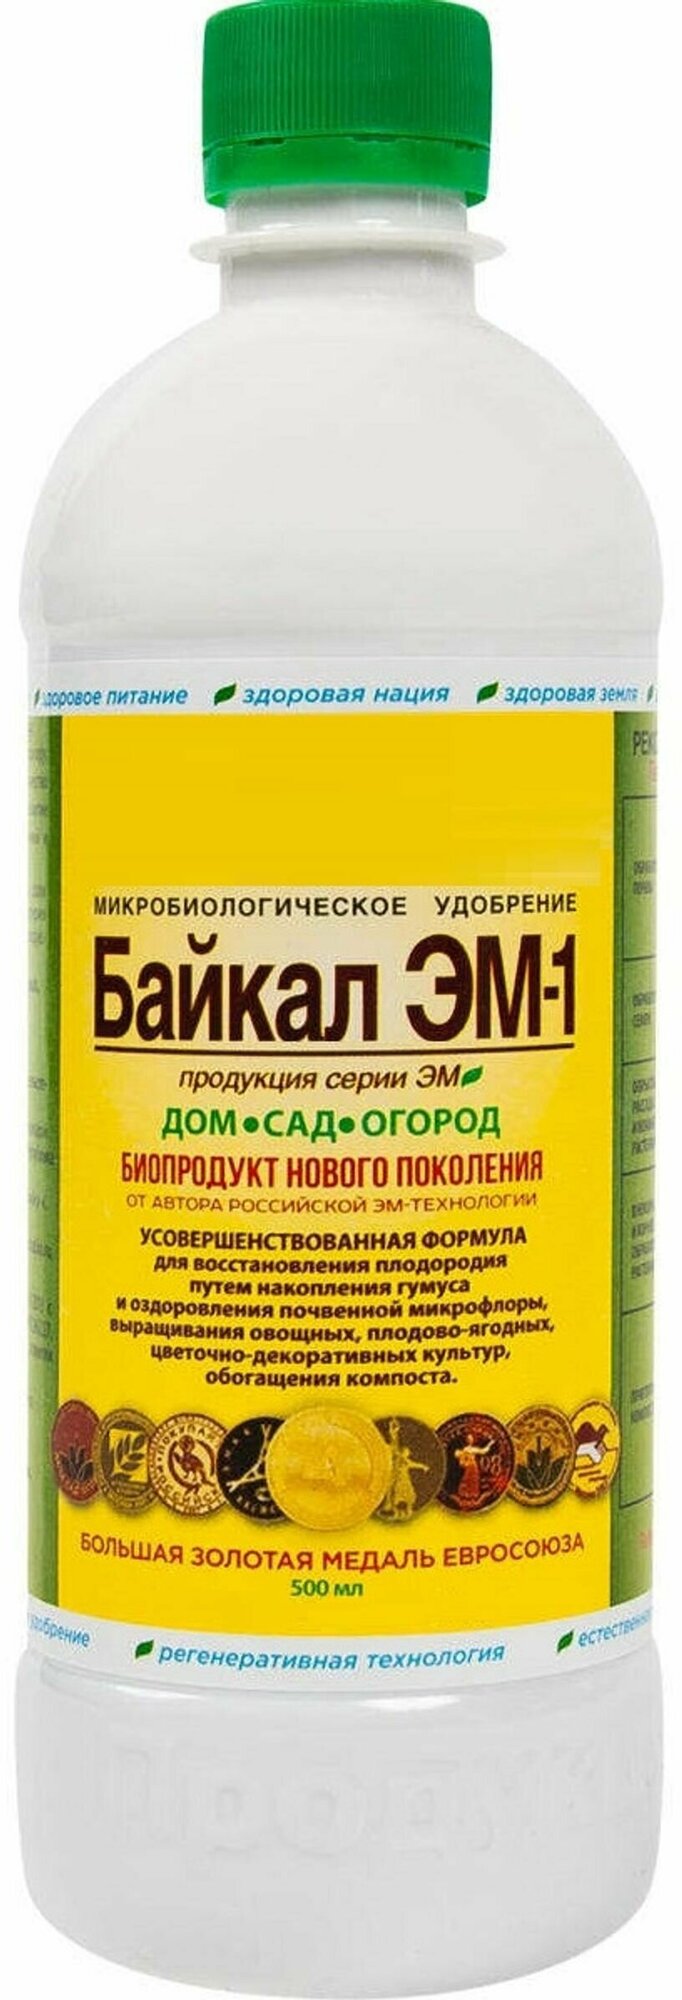 Микробиологическое удобрение "Байкал-ЭМ1", 0,5 л